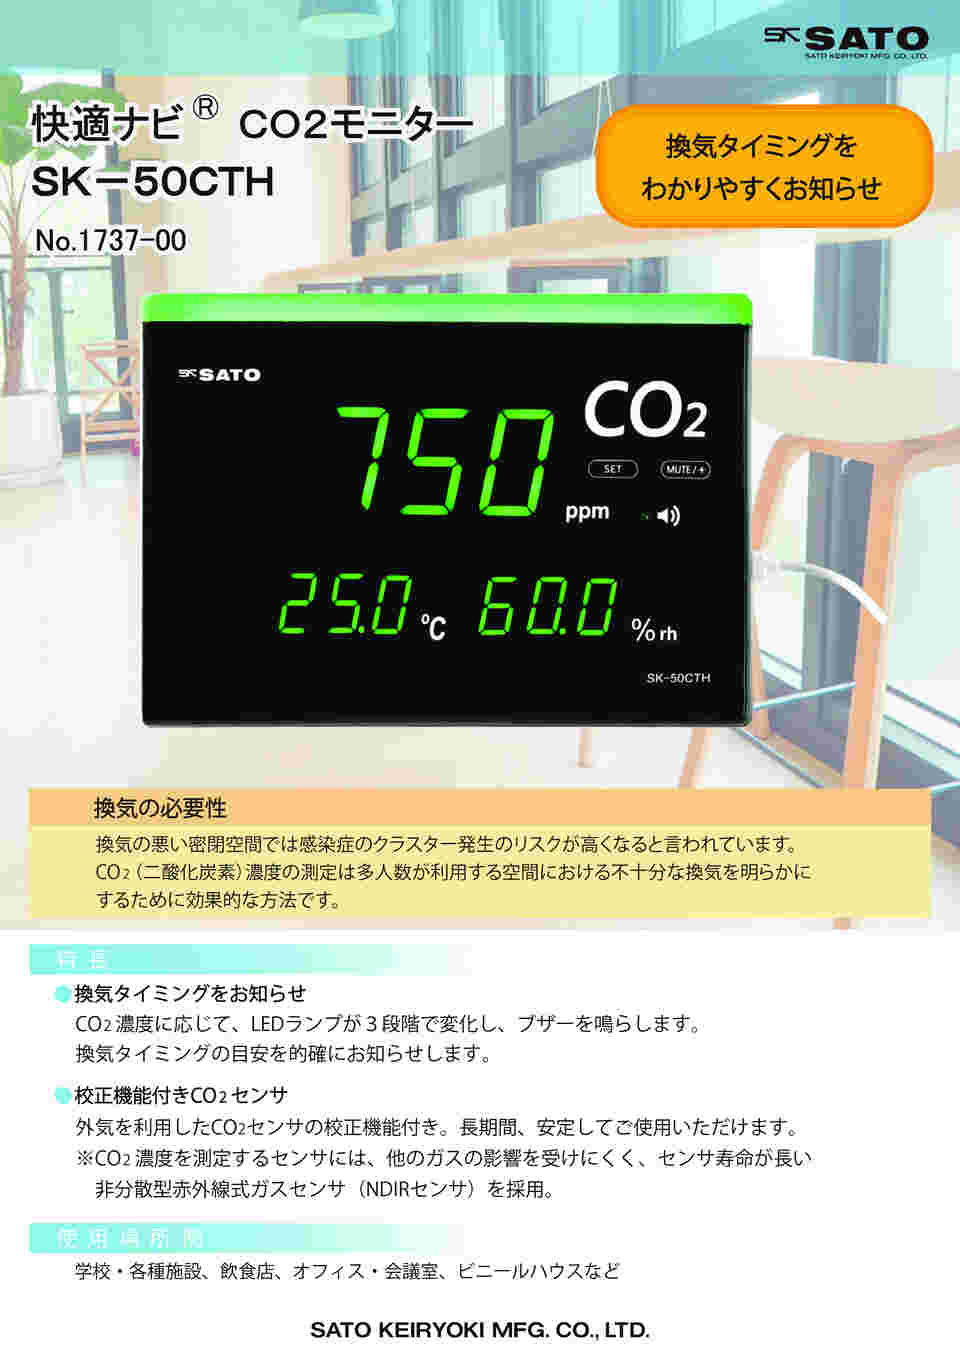 64-9051-66 快適ナビ CO2モニター SK-50CTH 【AXEL】 アズワン